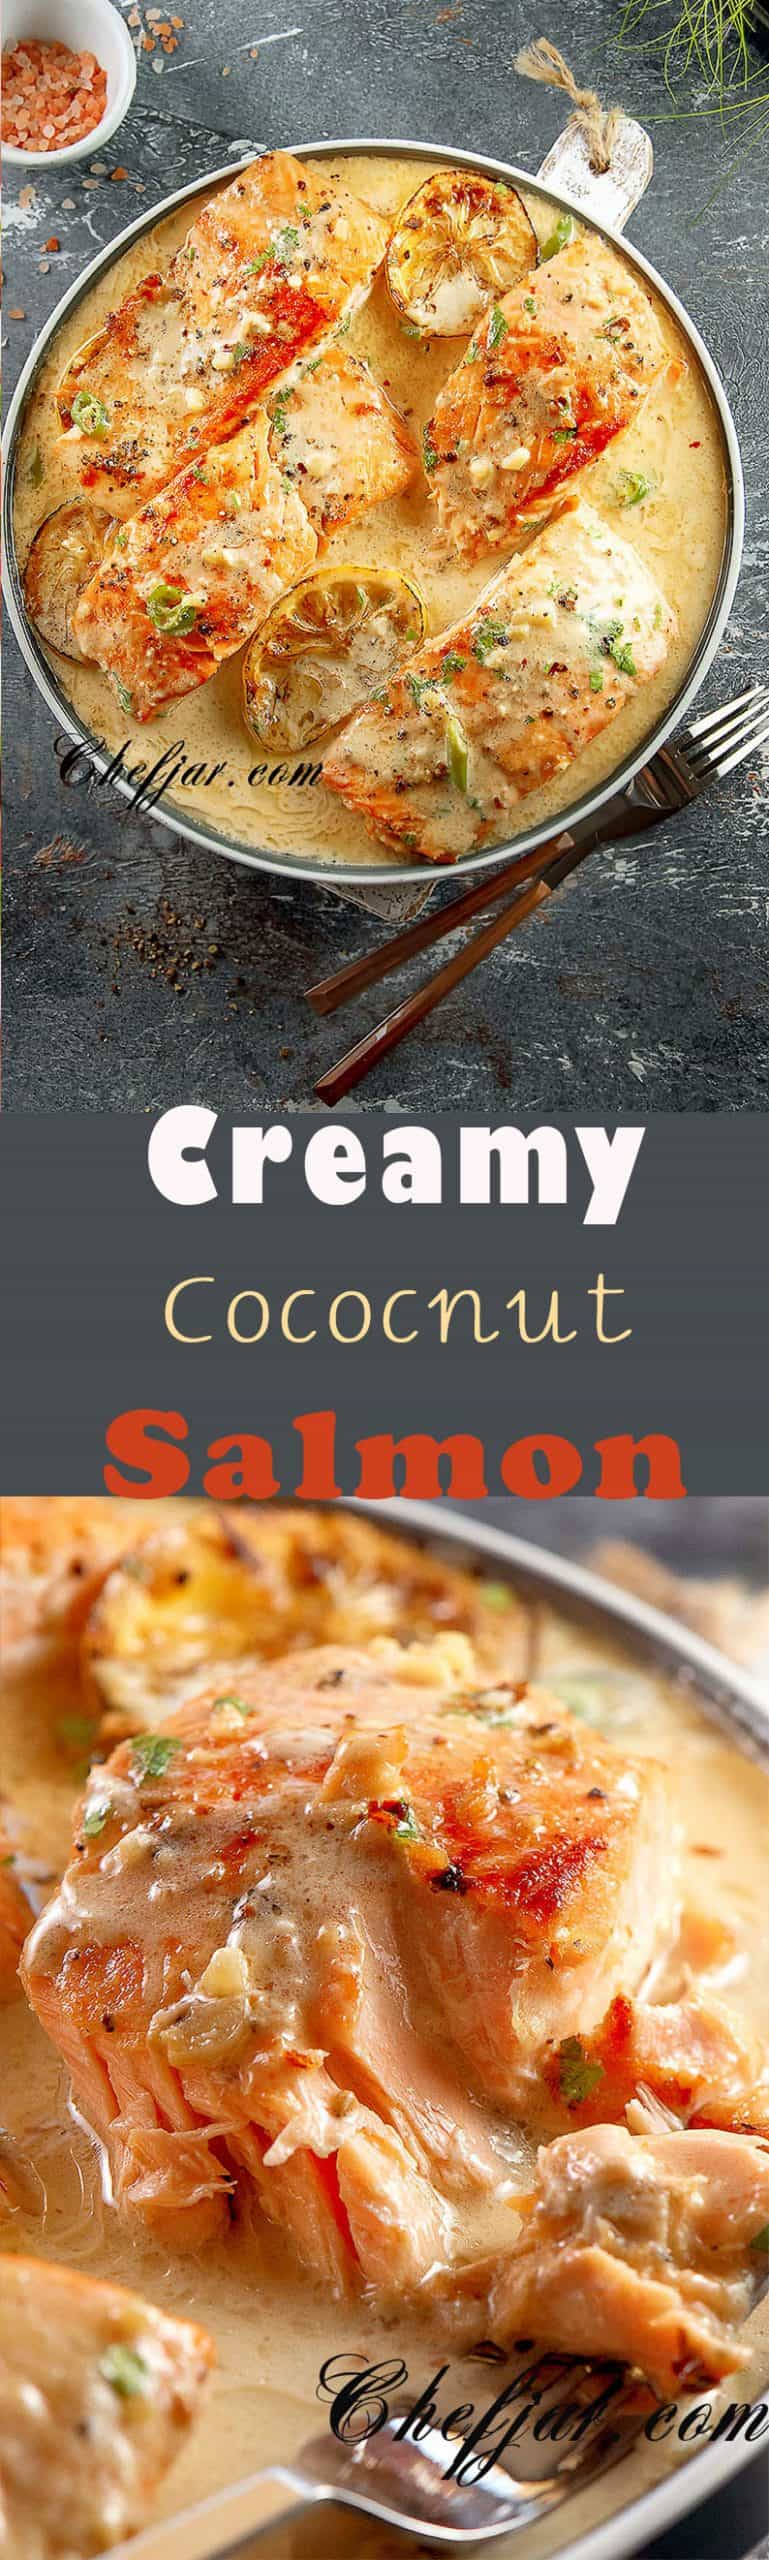 creamy-salmon-recipe